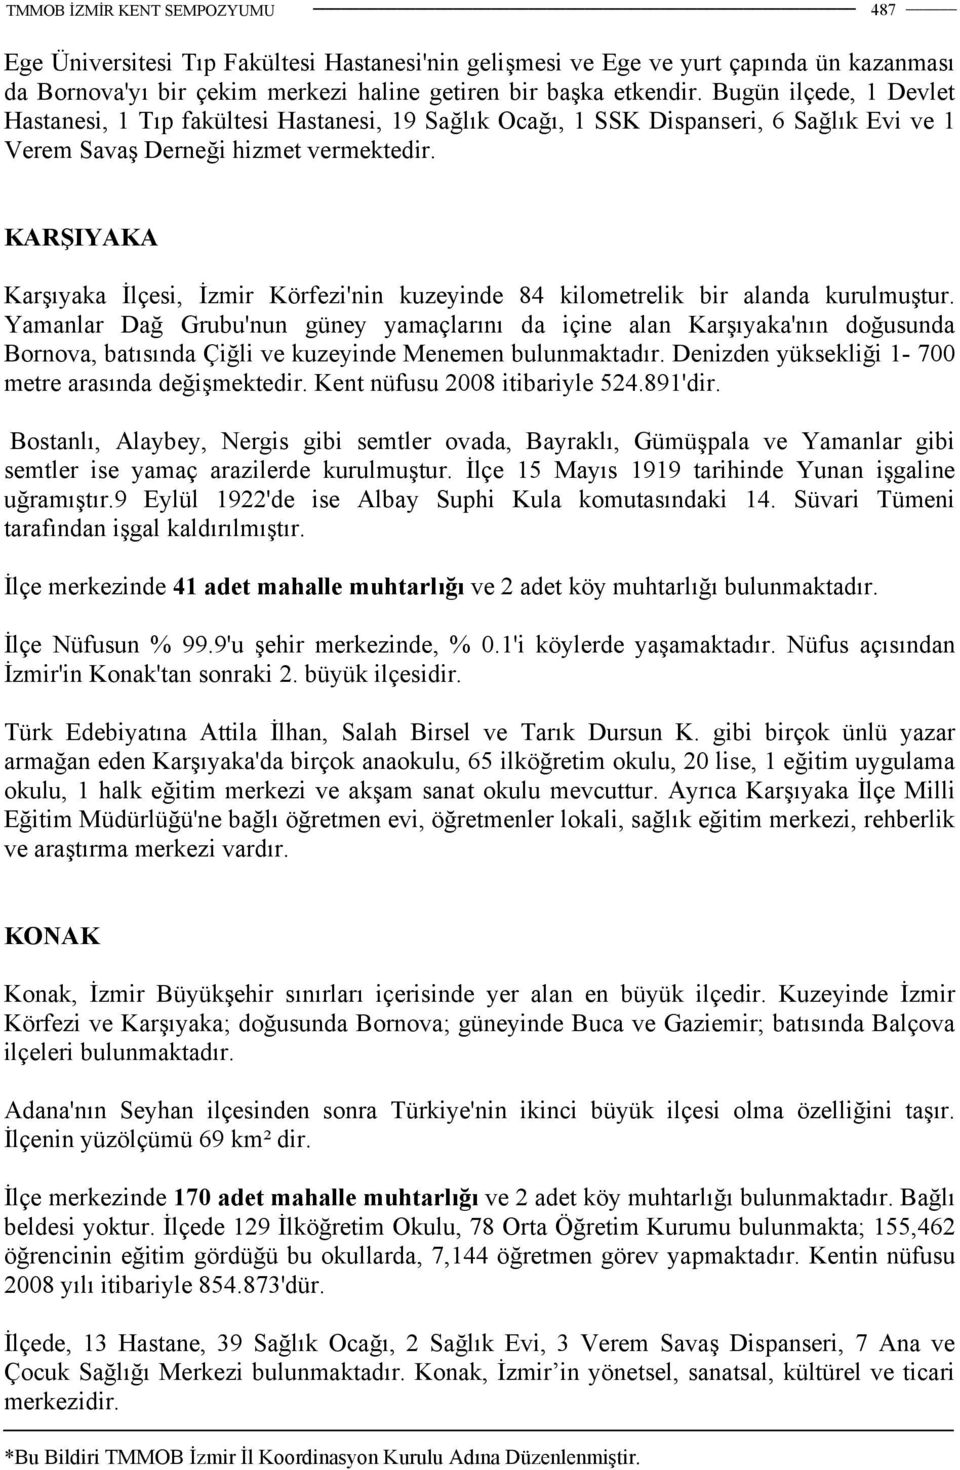 KARŞIYAKA Karşıyaka İlçesi, İzmir Körfezi'nin kuzeyinde 84 kilometrelik bir alanda kurulmuştur.